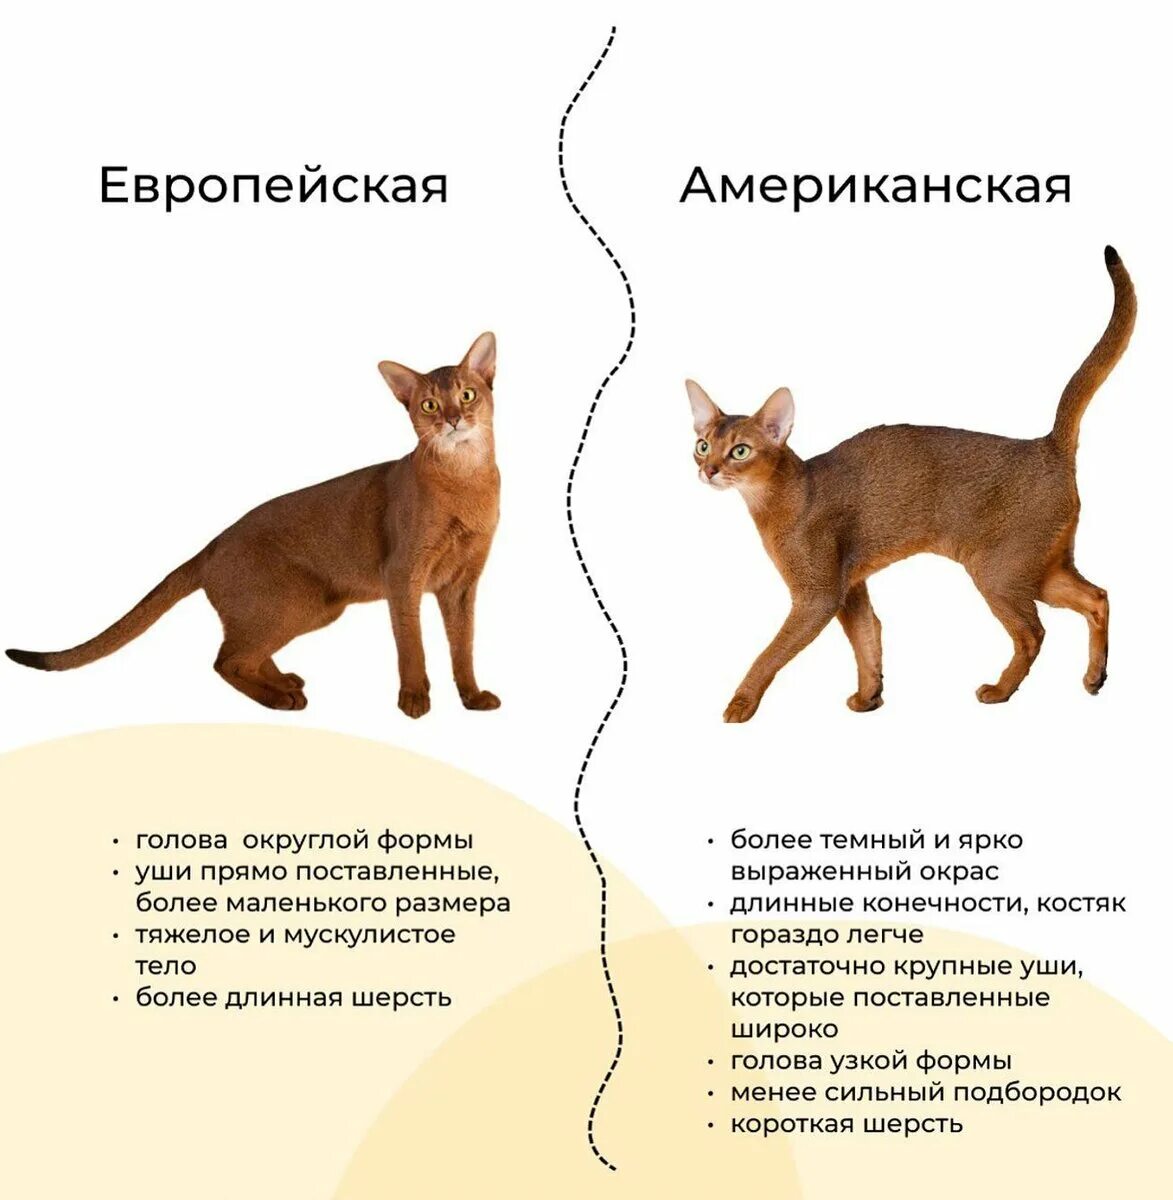 Рассмотрите фотографию кошки породы абиссинская и выполните. Кот Абиссинской породы. Европейская Абиссинская кошка и американская различия. Абиссинская кошка европейского типа и американского. Абиссинская кошка активная.